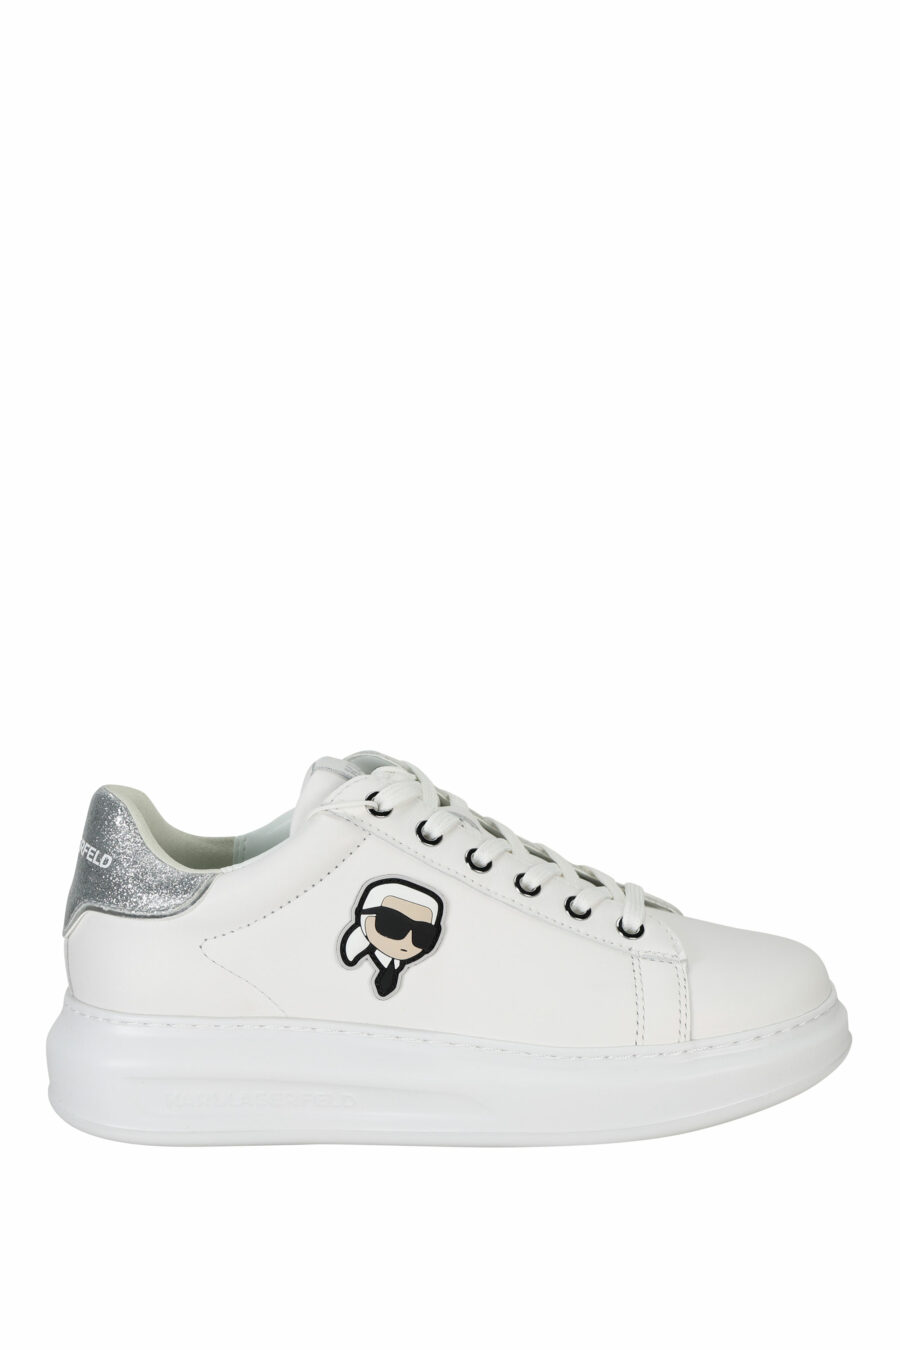 Zapatillas blancas "Kapri" con logo en goma y detalle plateado brillante - 5059529351174